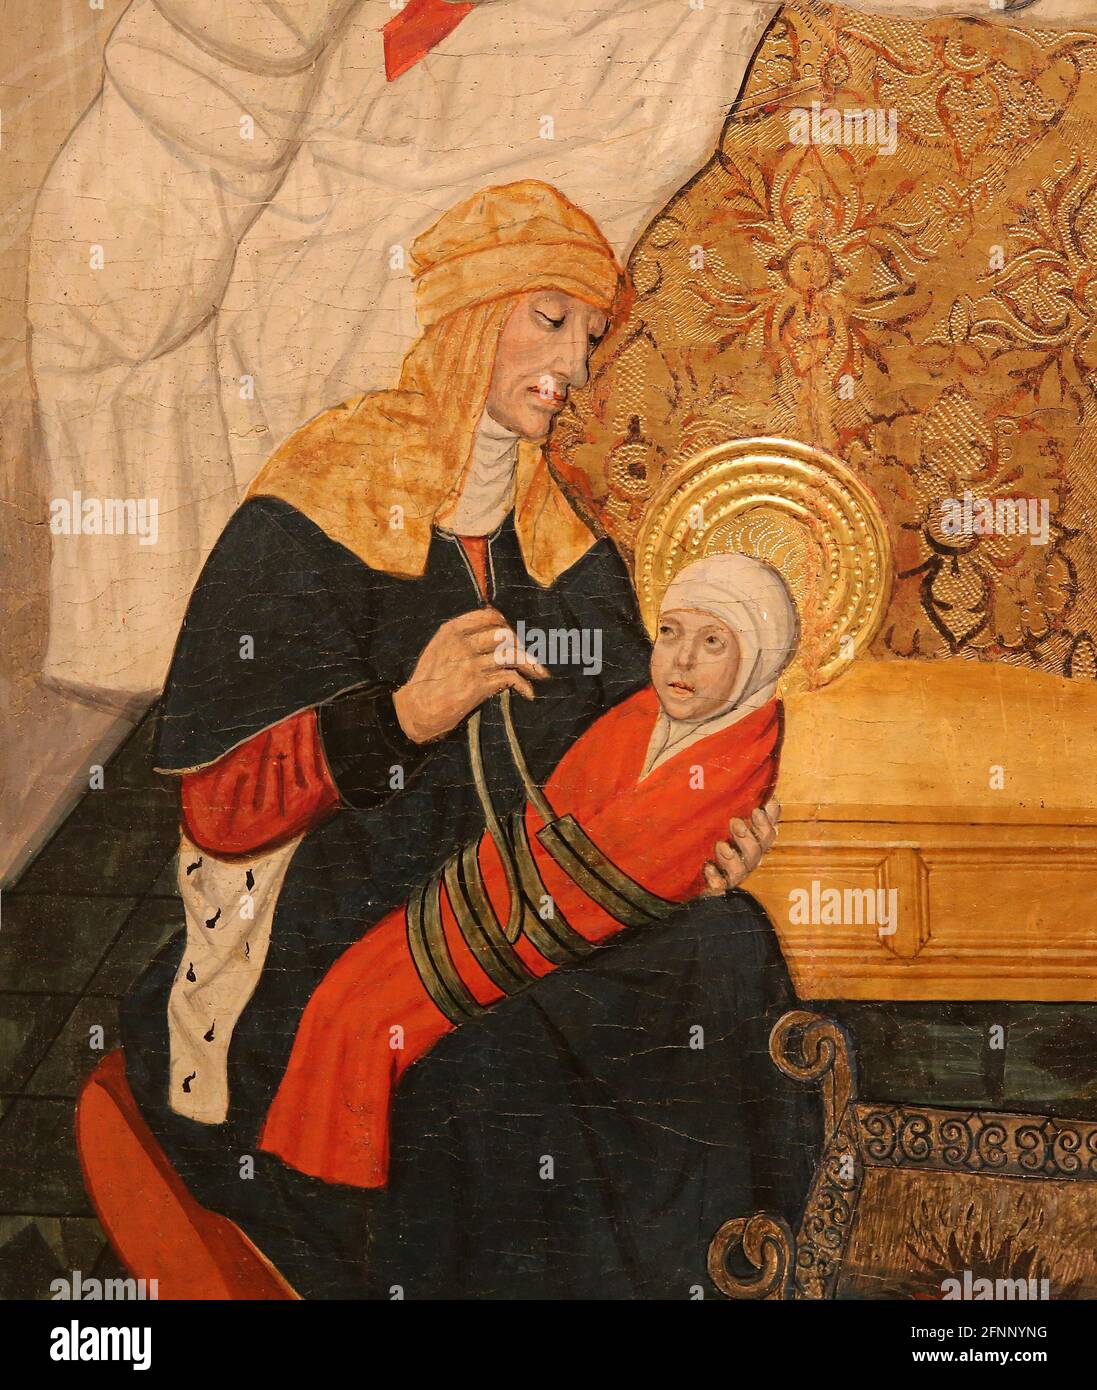 Retable de naissance de la Vierge par Pedro Garcia de Benabarre, c. 1475. Musée national d'art de Catalogne. Barcelone, Espagne. Banque D'Images